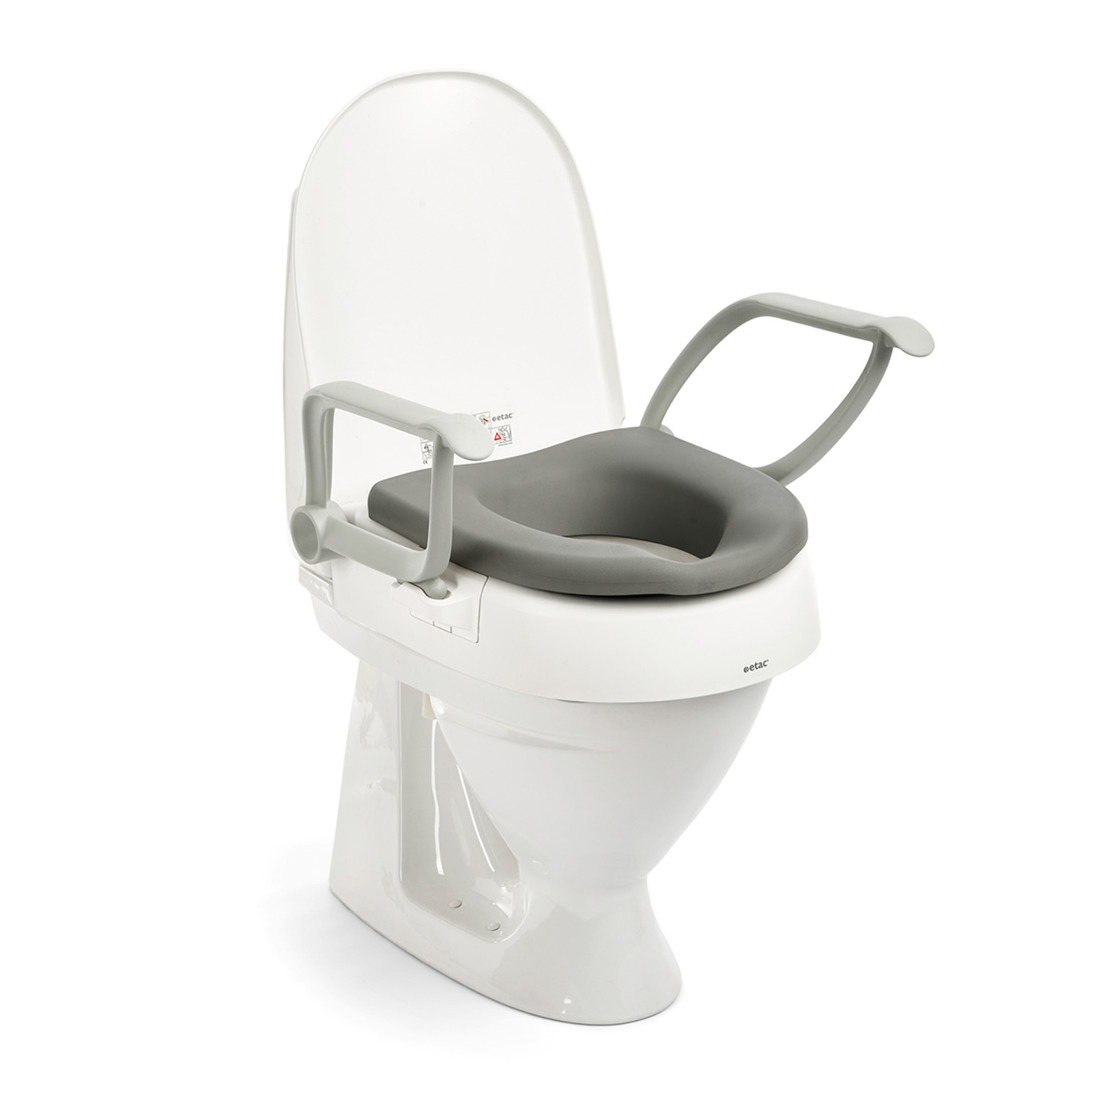 Etac soft seat on Cloo raised toilet seat